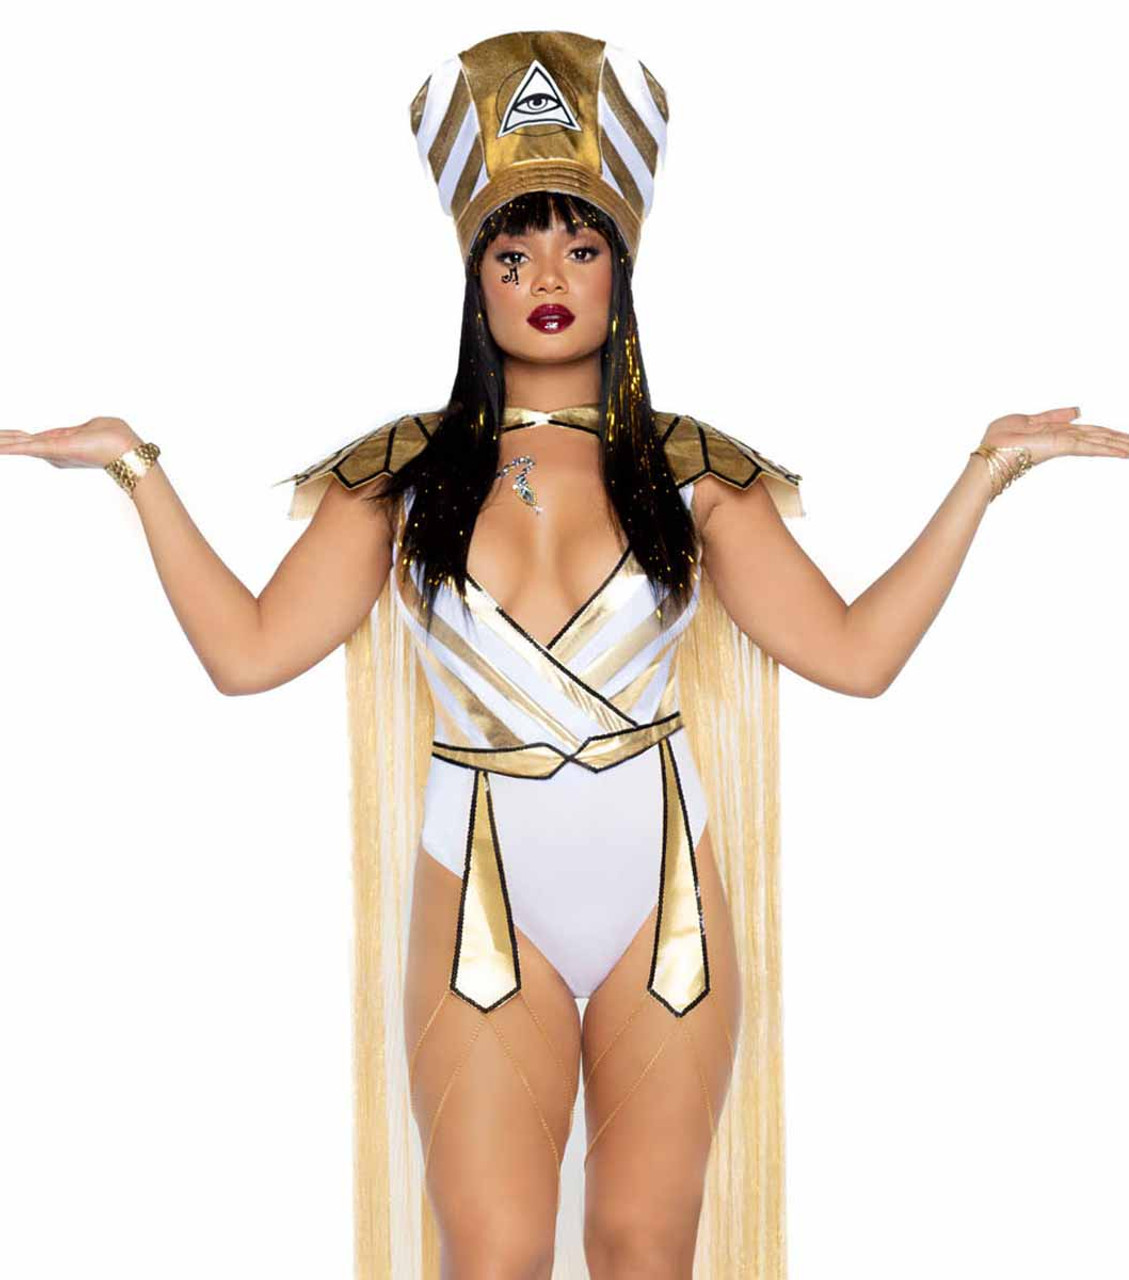 LA-86916, Queen Nefertiti Costume by Leg Avenue